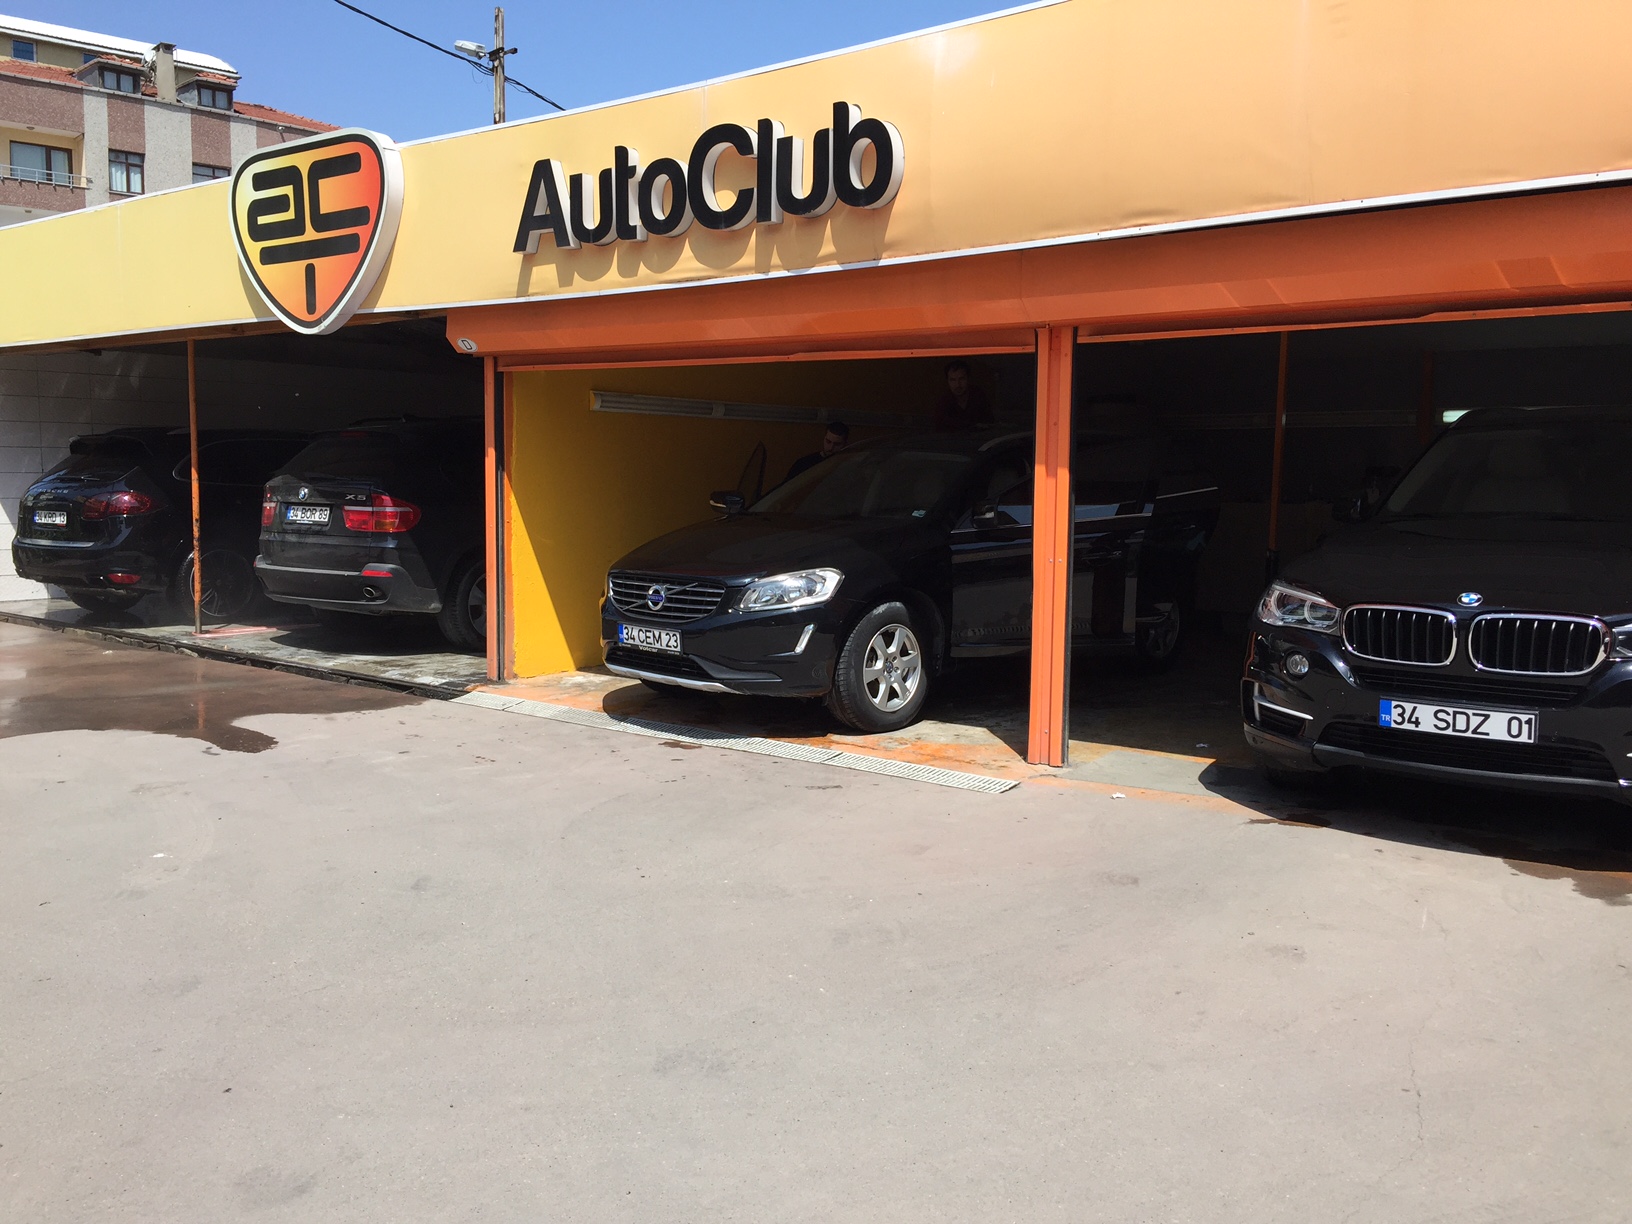 AutoClub Kavacık - İstanbul Kavacık